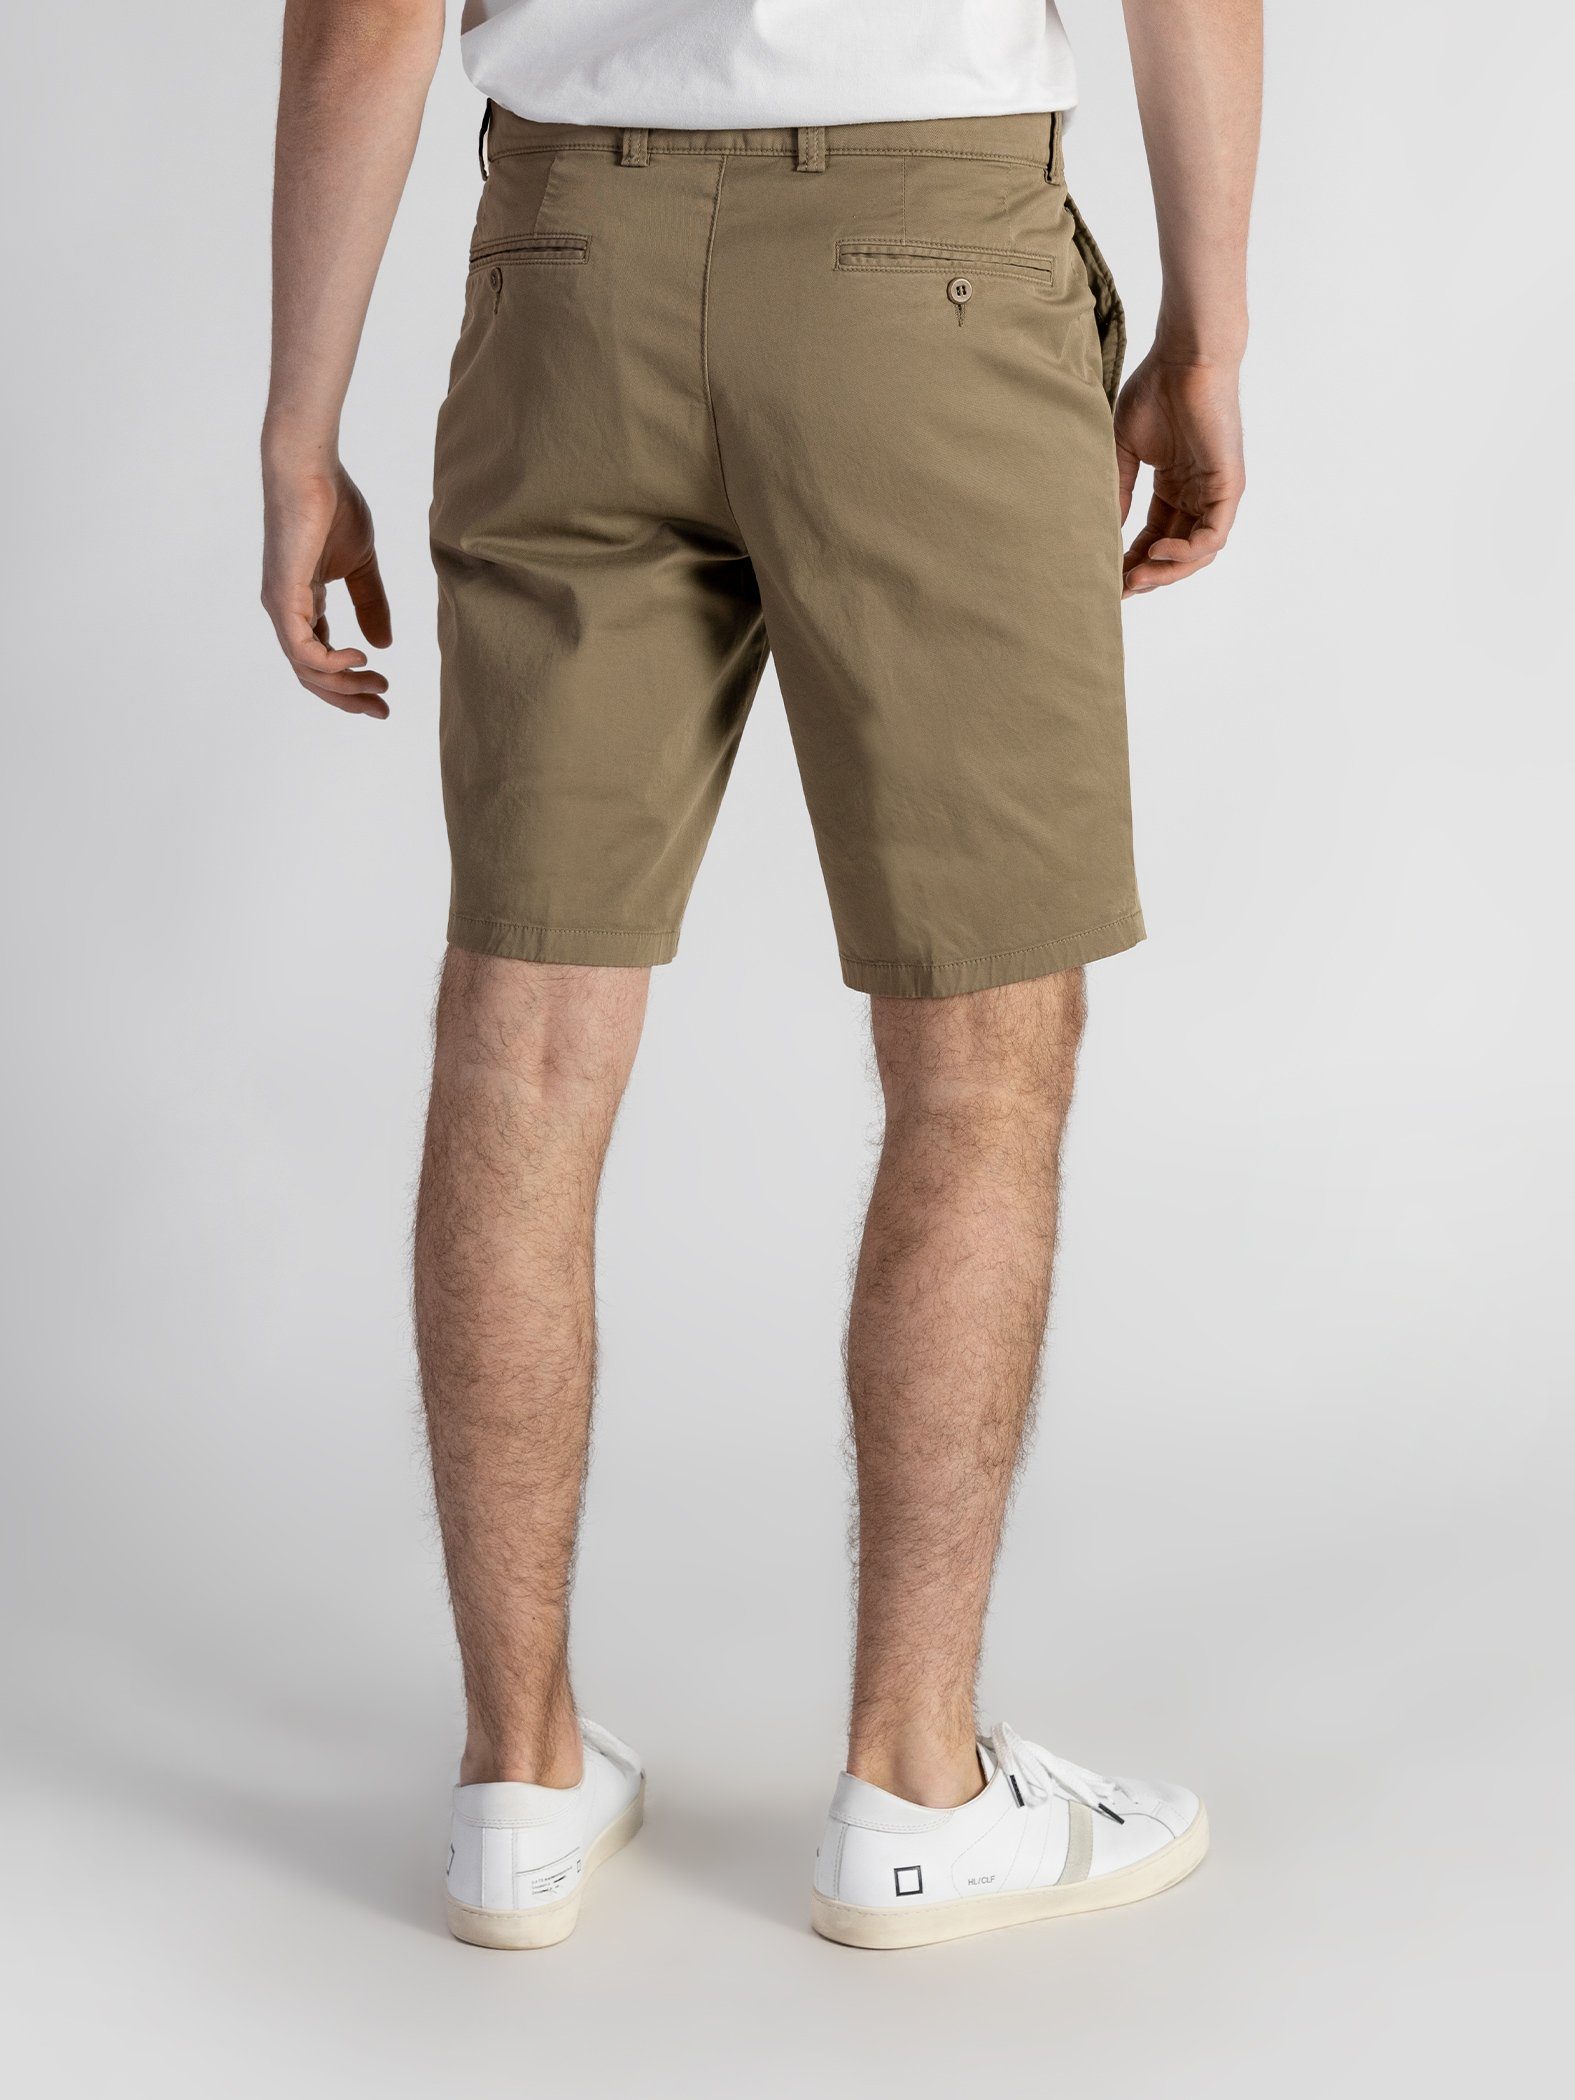 TwoMates Shorts Shorts mit elastischem Beige GOTS-zertifiziert Bund, Farbauswahl